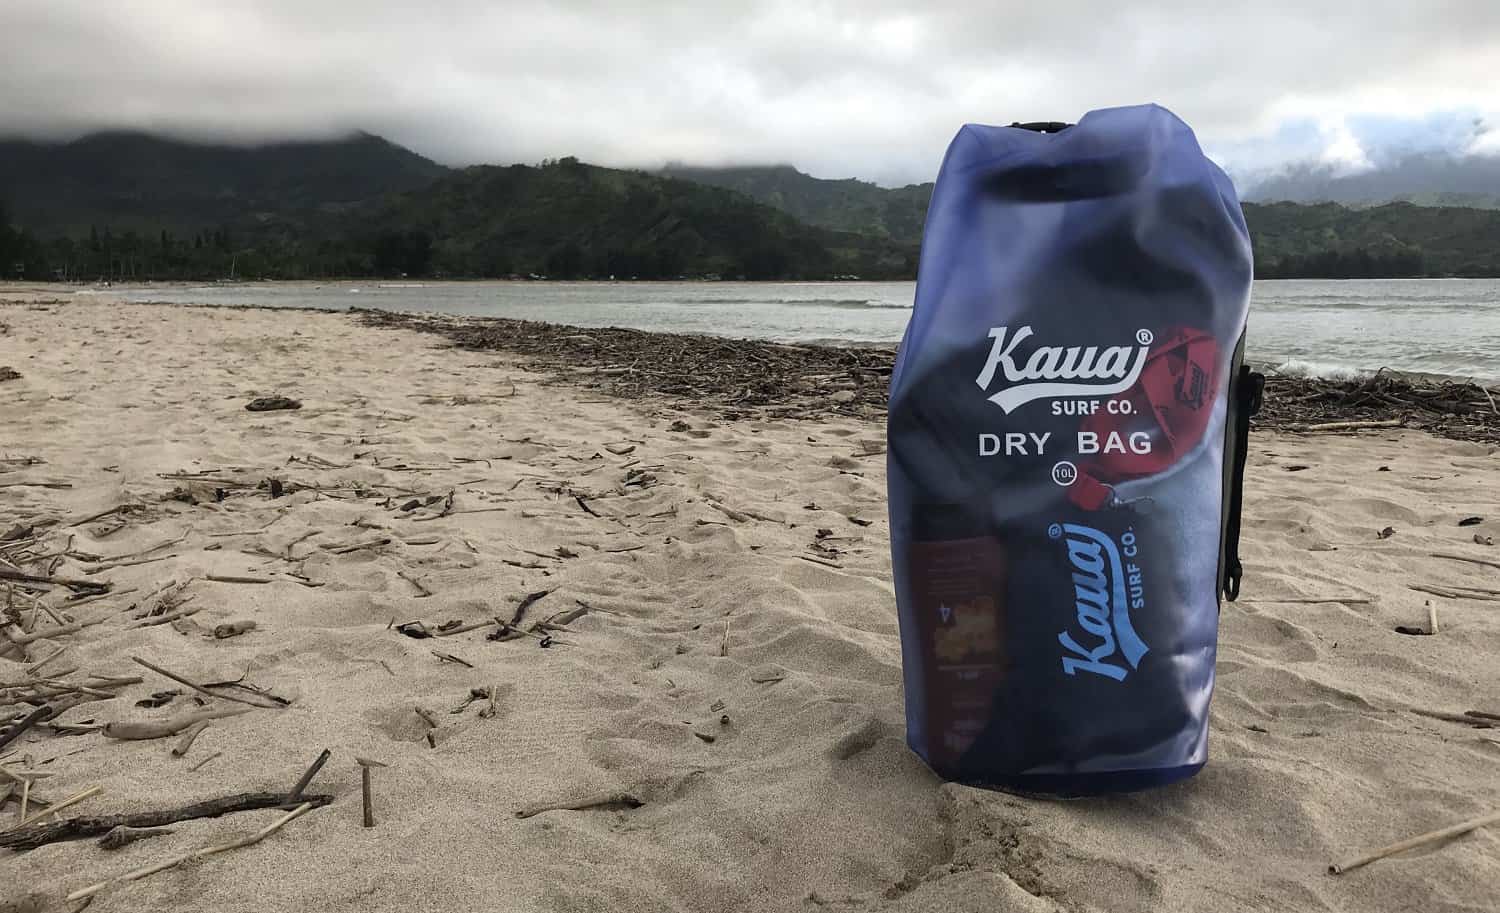 Kauai Backpacks and Dry Bags